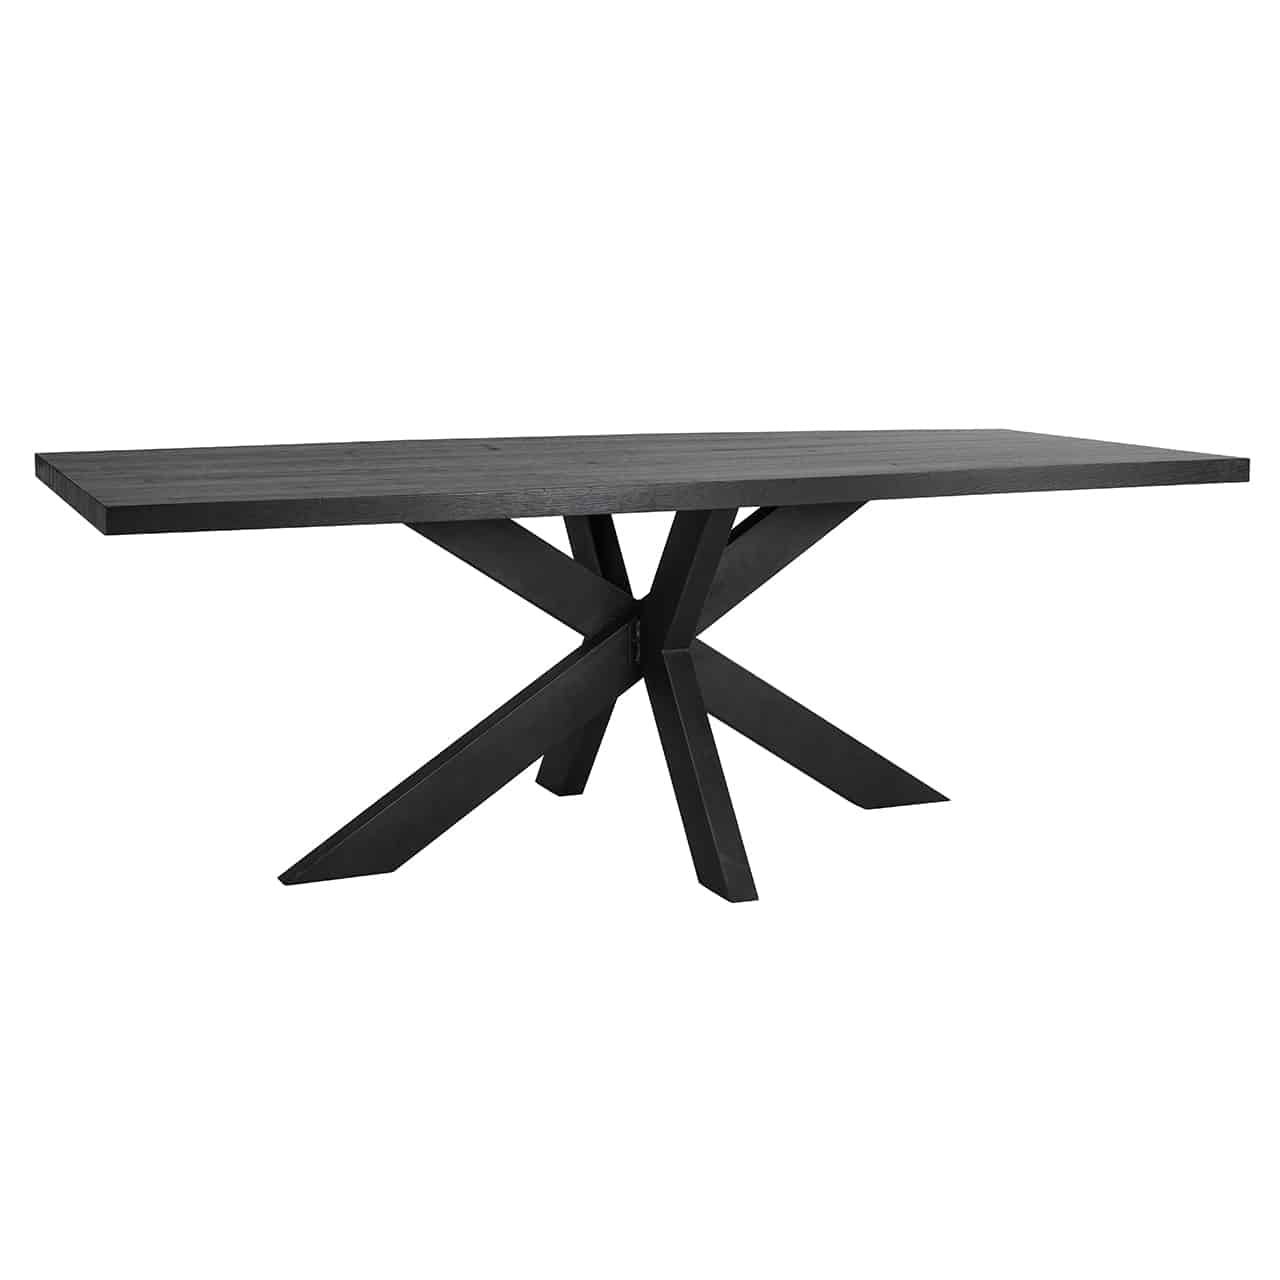 Tischplatte Oakura 200, rechteckig, aus schwarzem Eichenholzfurnier; hier auf einem sternförmigen schwarzem Tischgestell.